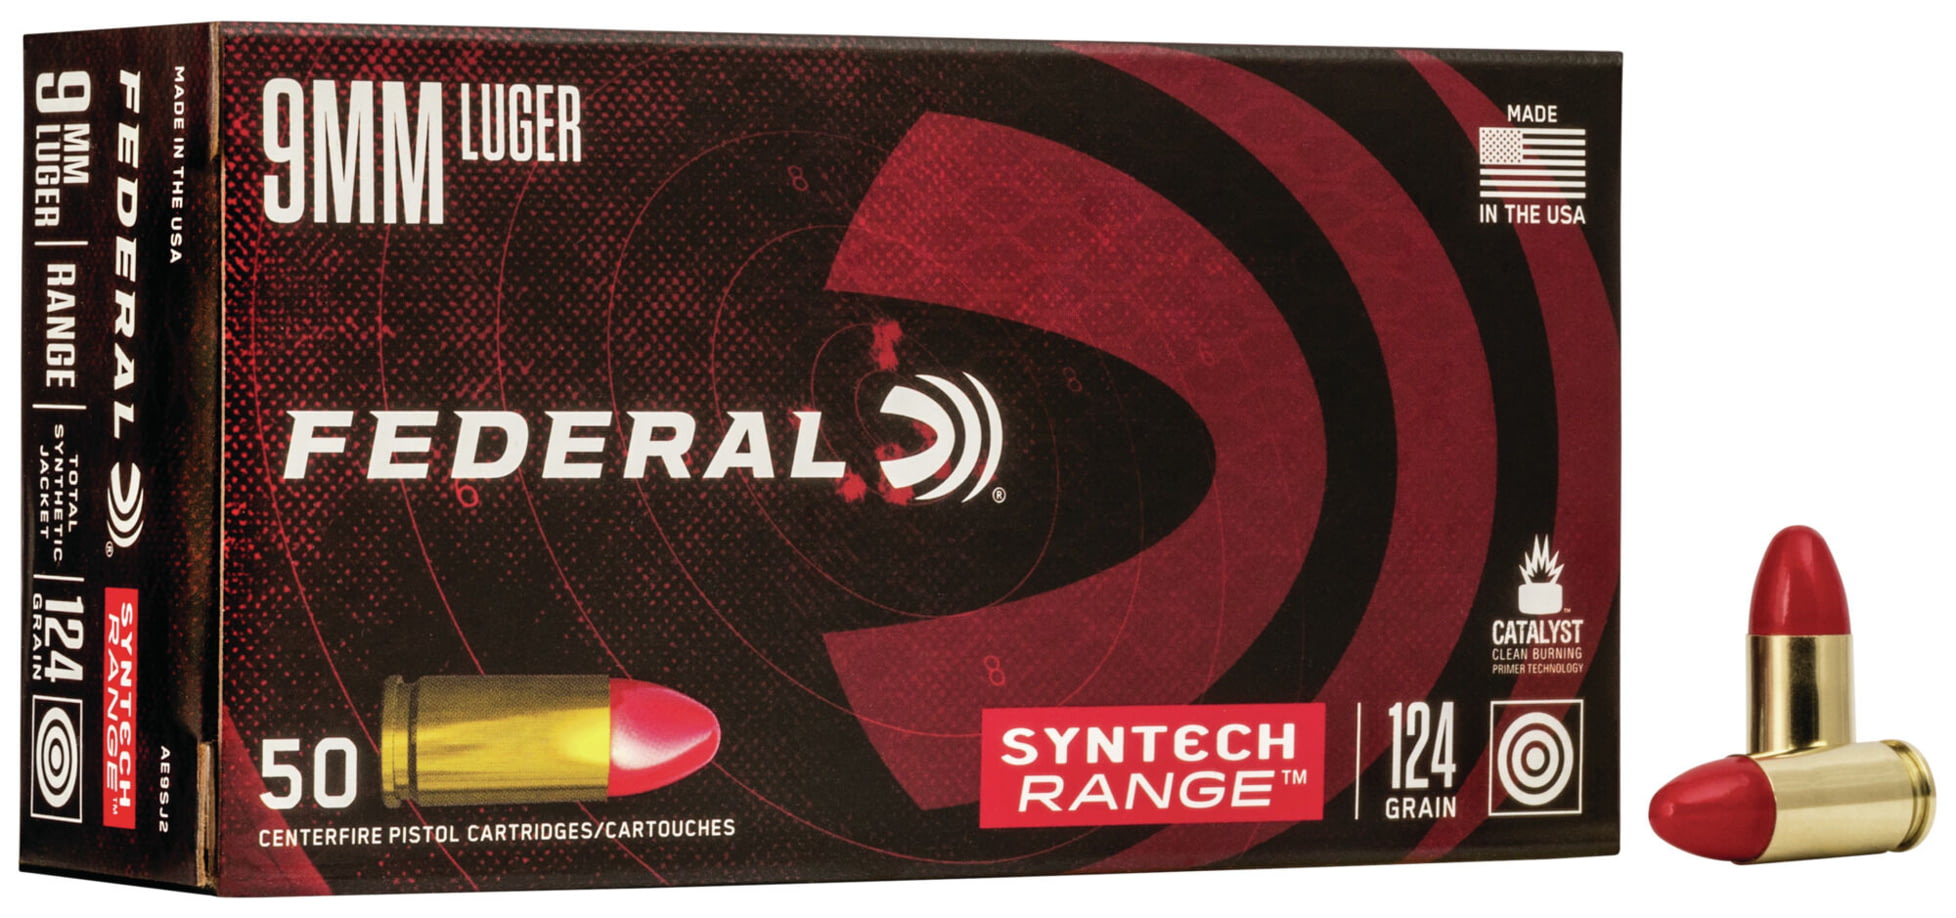 Federal Premium Centerfire Handgun Ammunition 9mm Luger 124 grain Syntech Total Synthetic Jacket Centerfire Pistol Ammunition